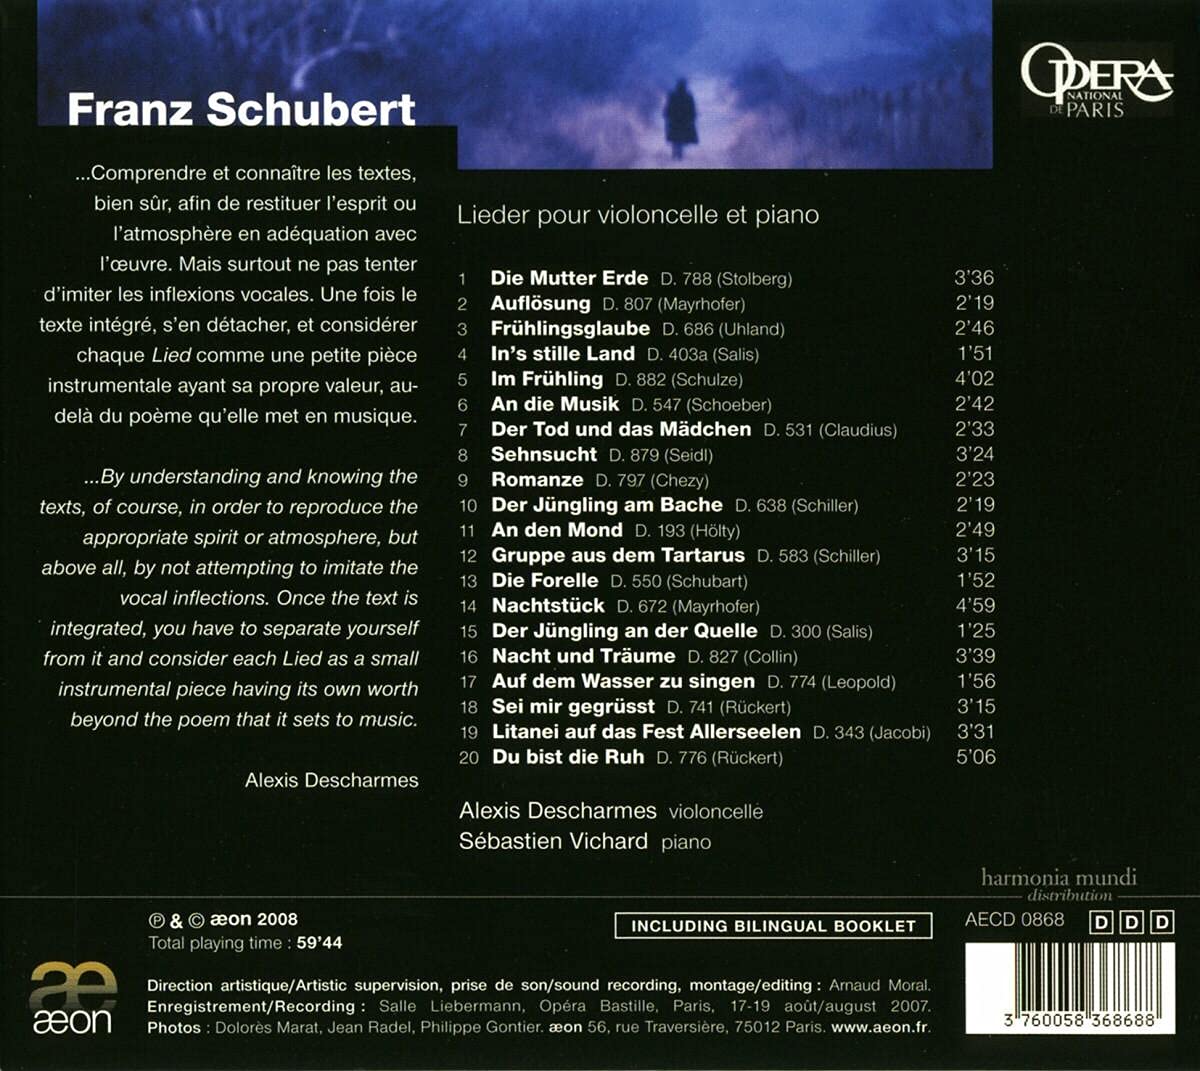 Schubert: Lieder pour violoncelle et piano - slide-1